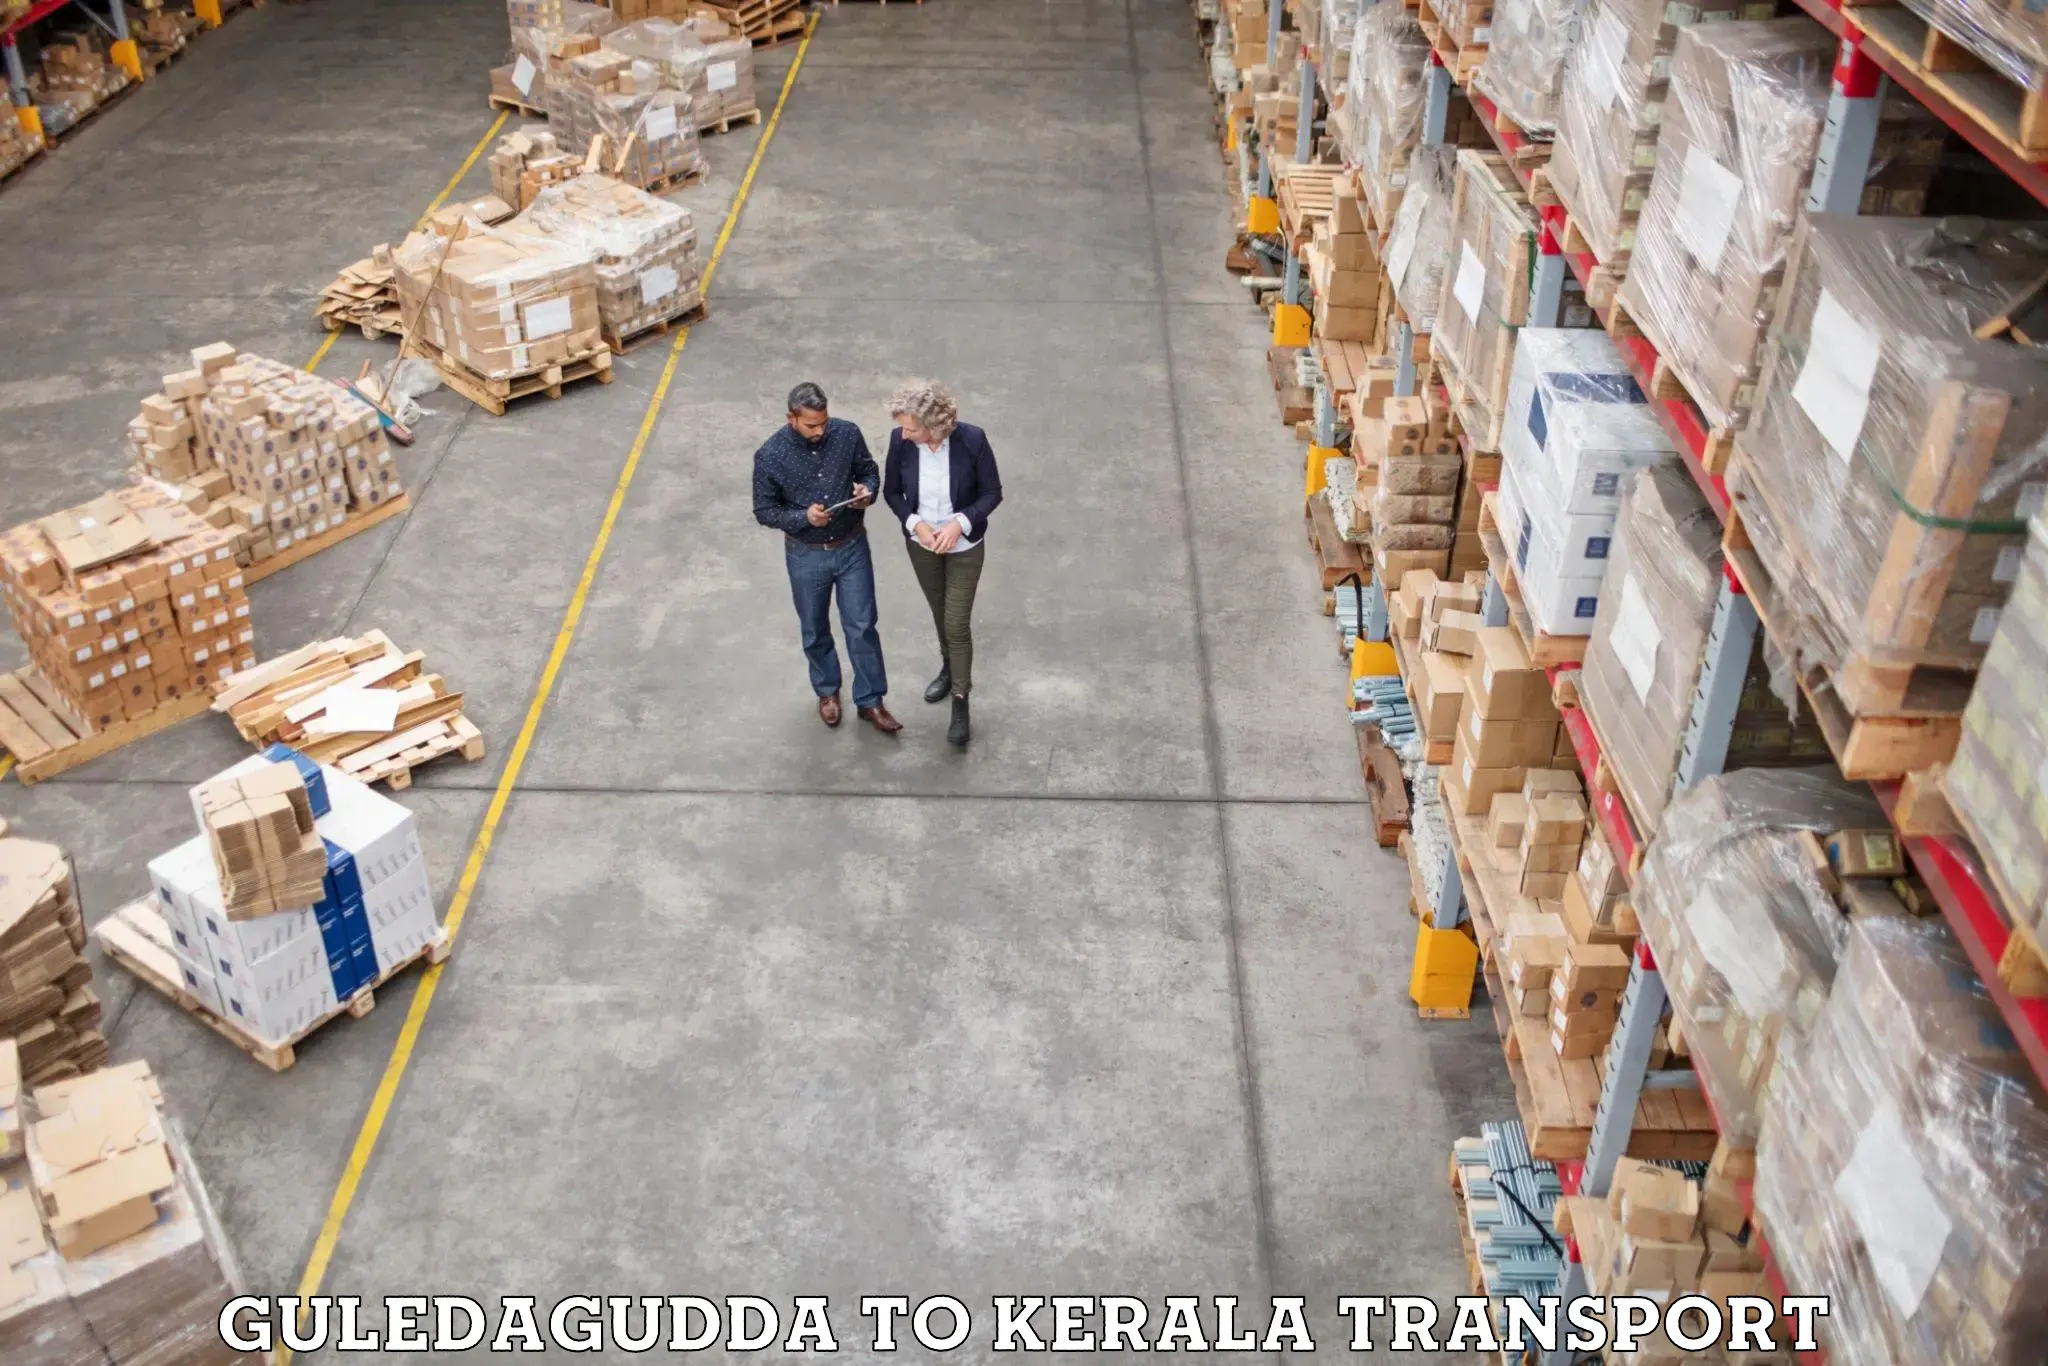 Goods transport services Guledagudda to Cochin